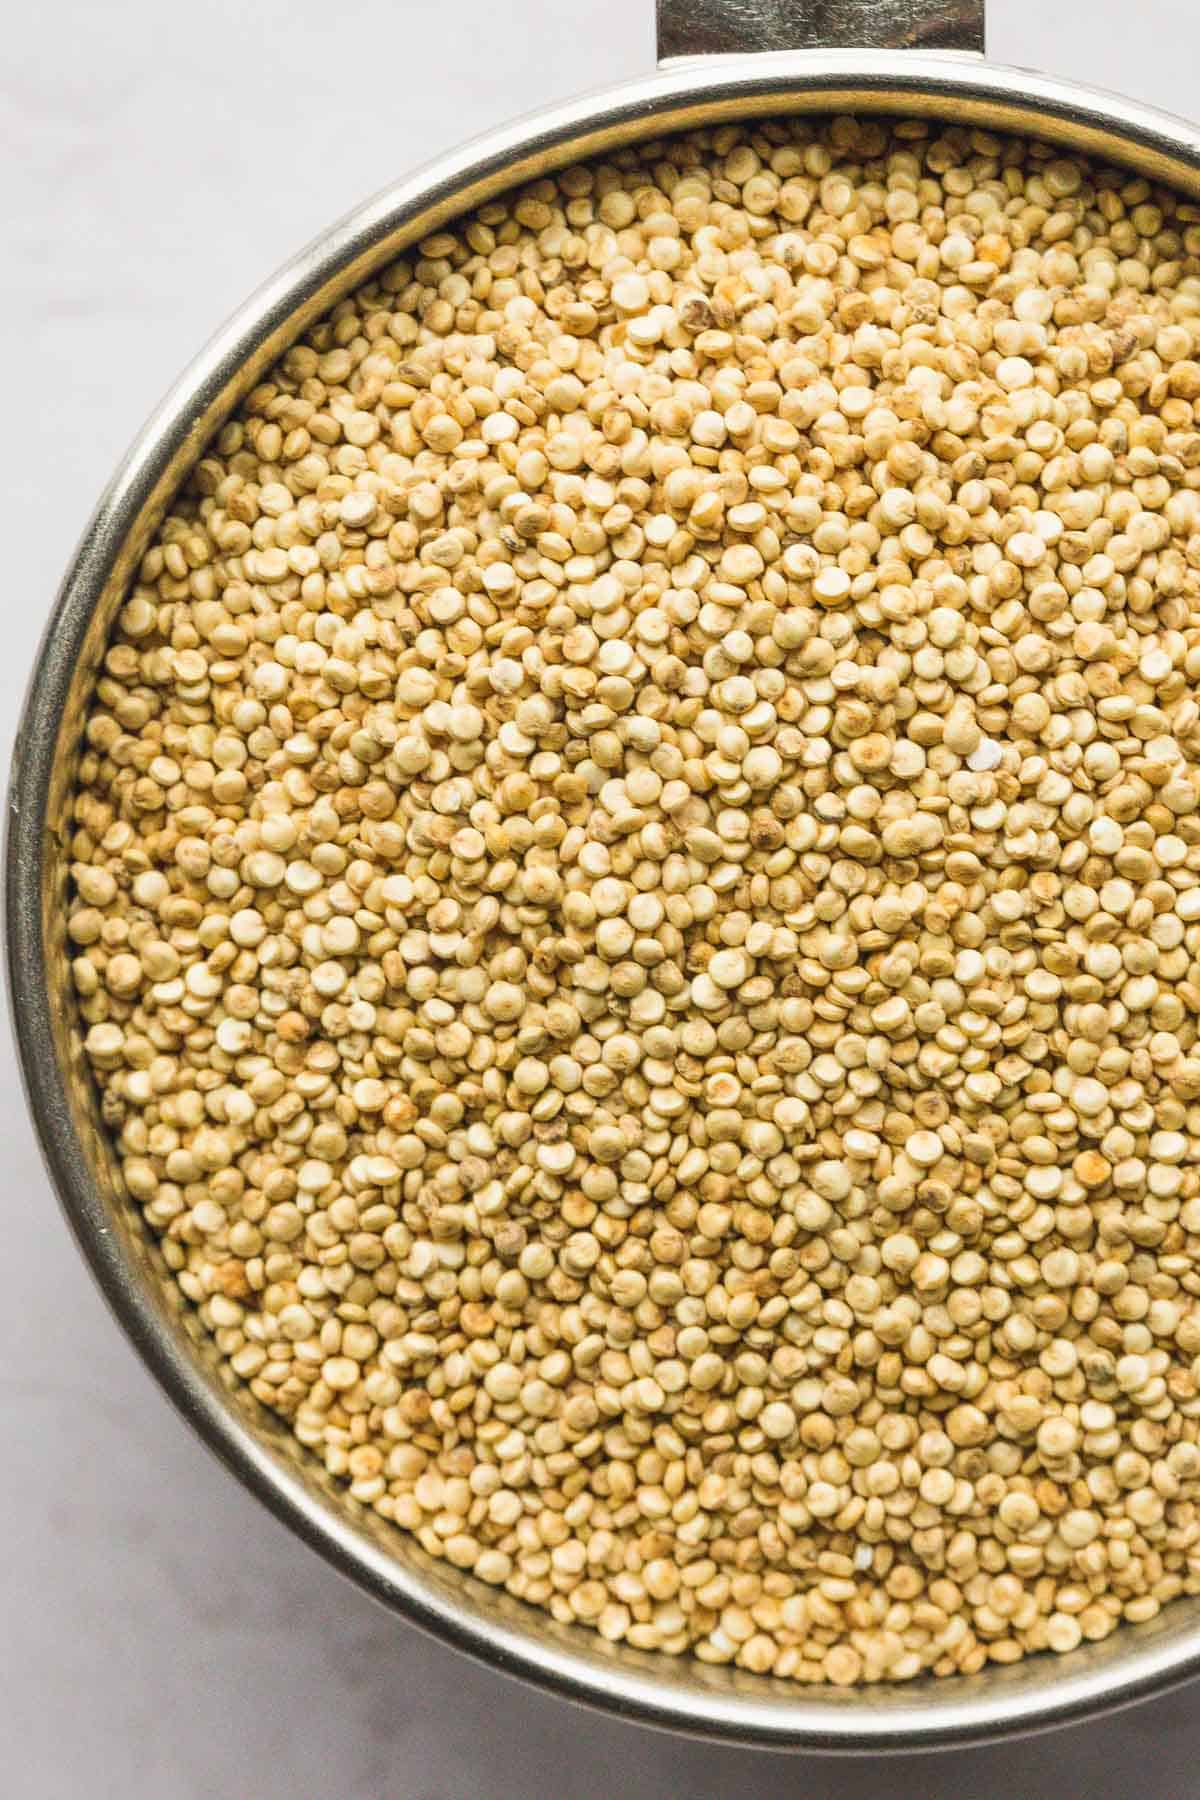 A close up of dried quinoa seeds 